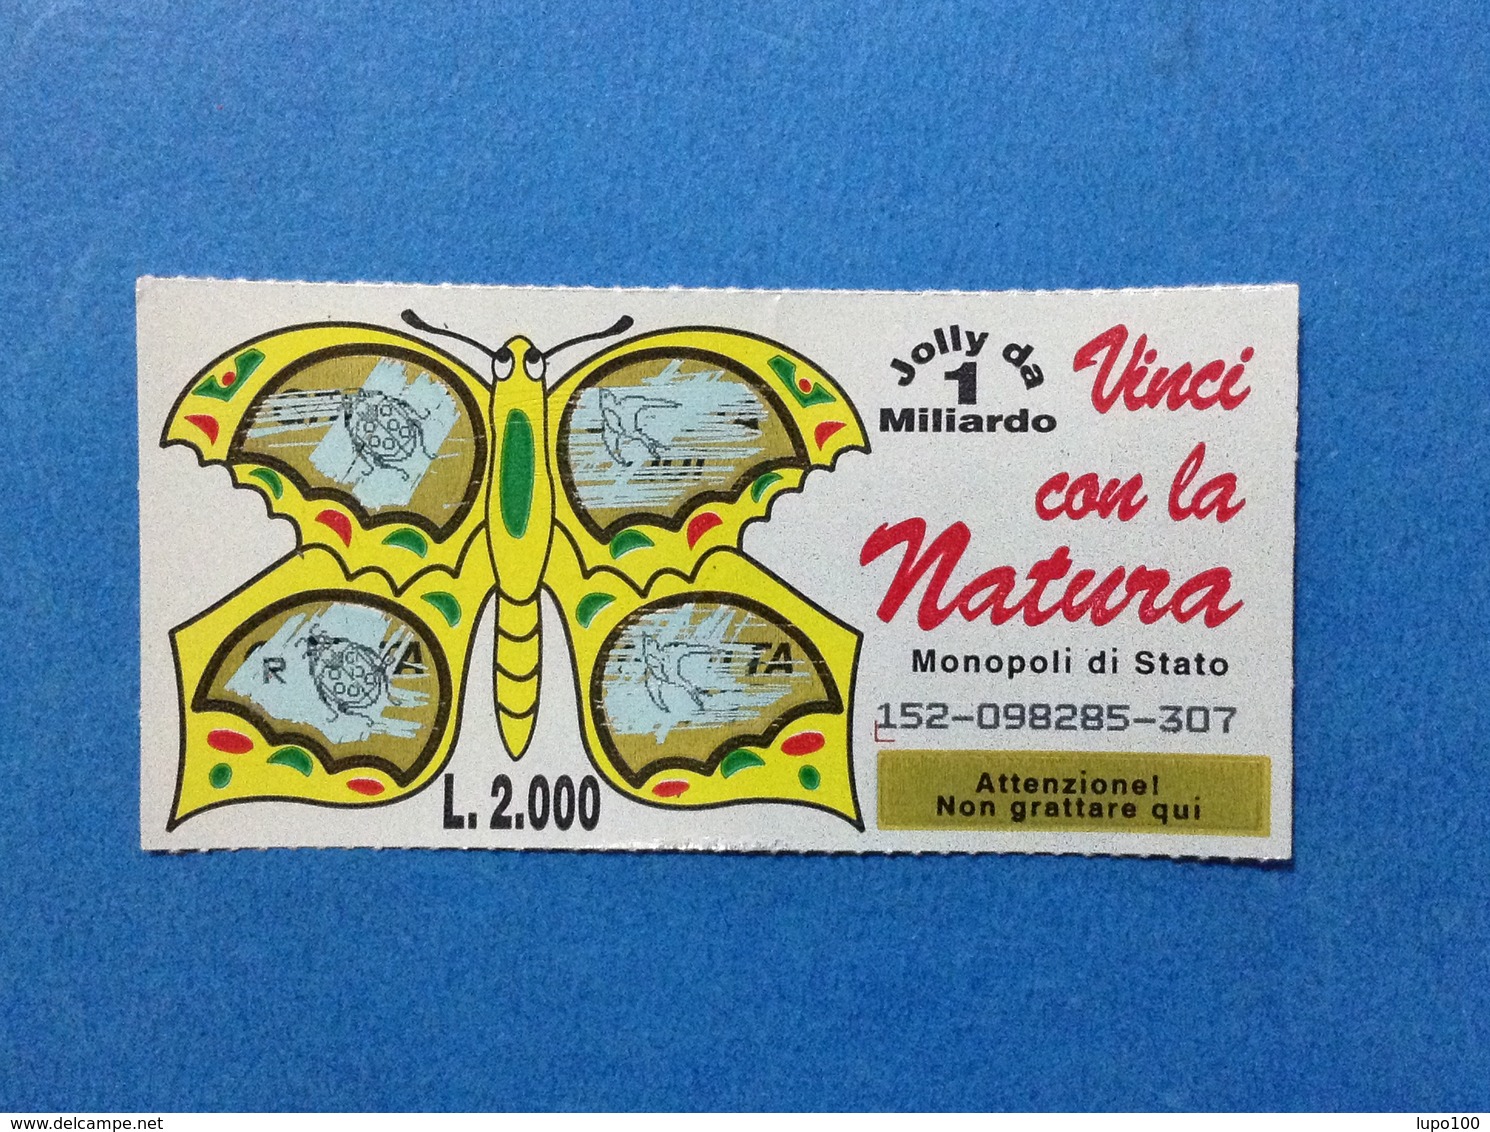 GRATTA E VINCI USATO L. 2000 VINCI CON LA NATURA FARFALLA GIALLA - Billets De Loterie